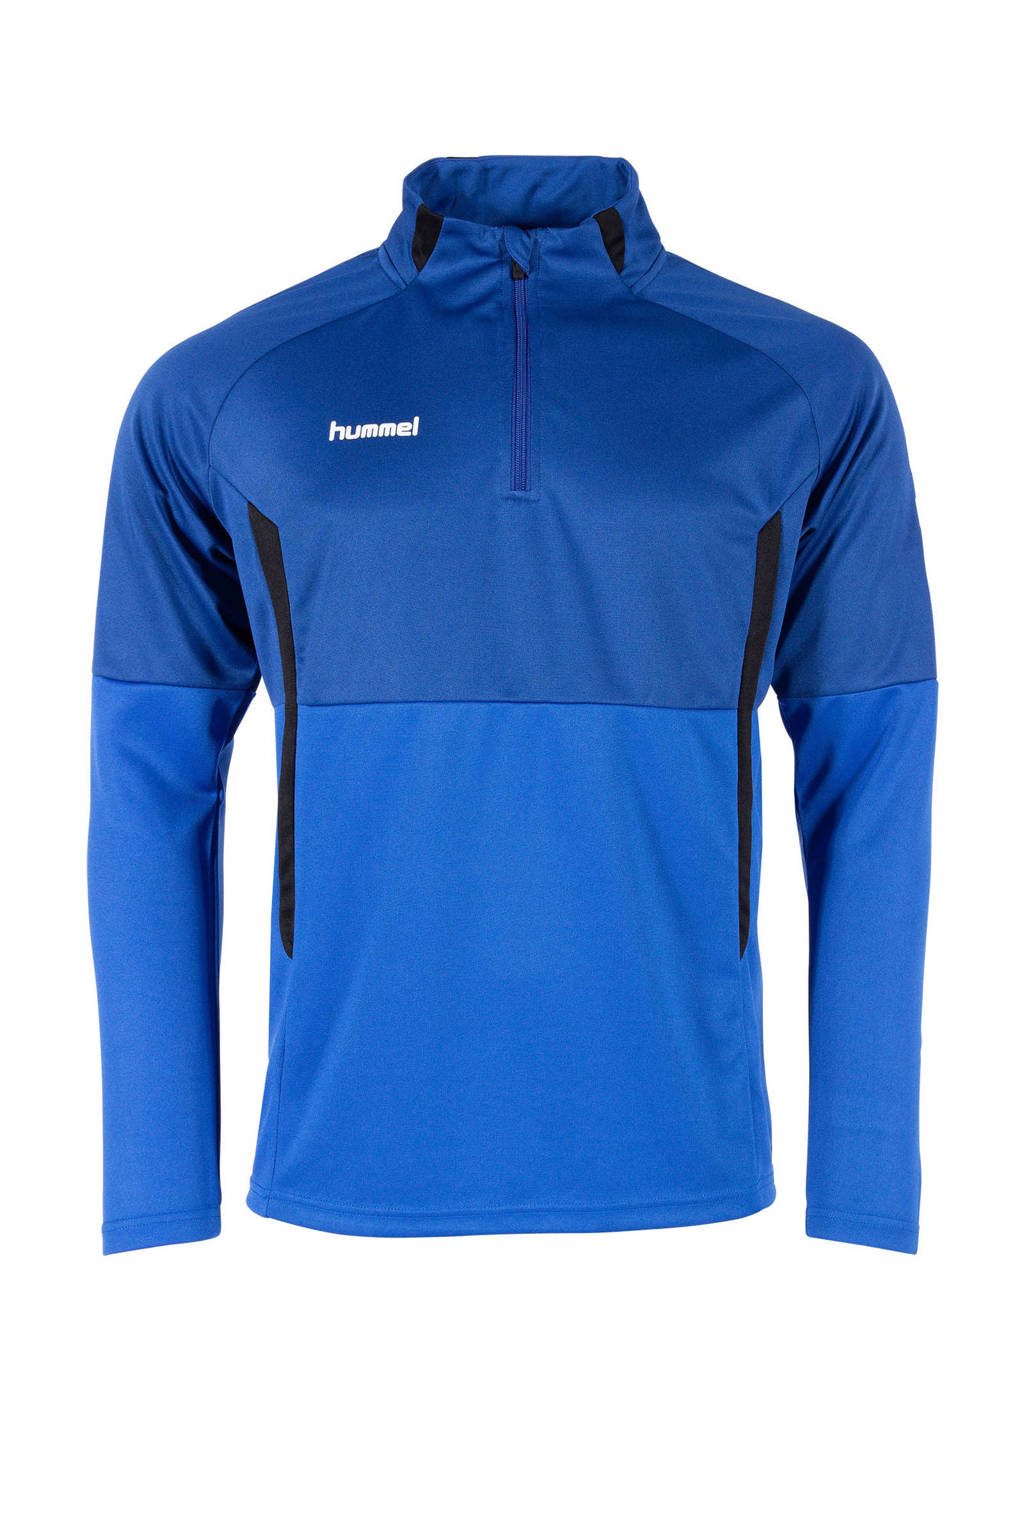 hummel Junior  sportsweater Authentic 1/4 Zip kobaltblauw/zwart, Kobaltblauw/zwart